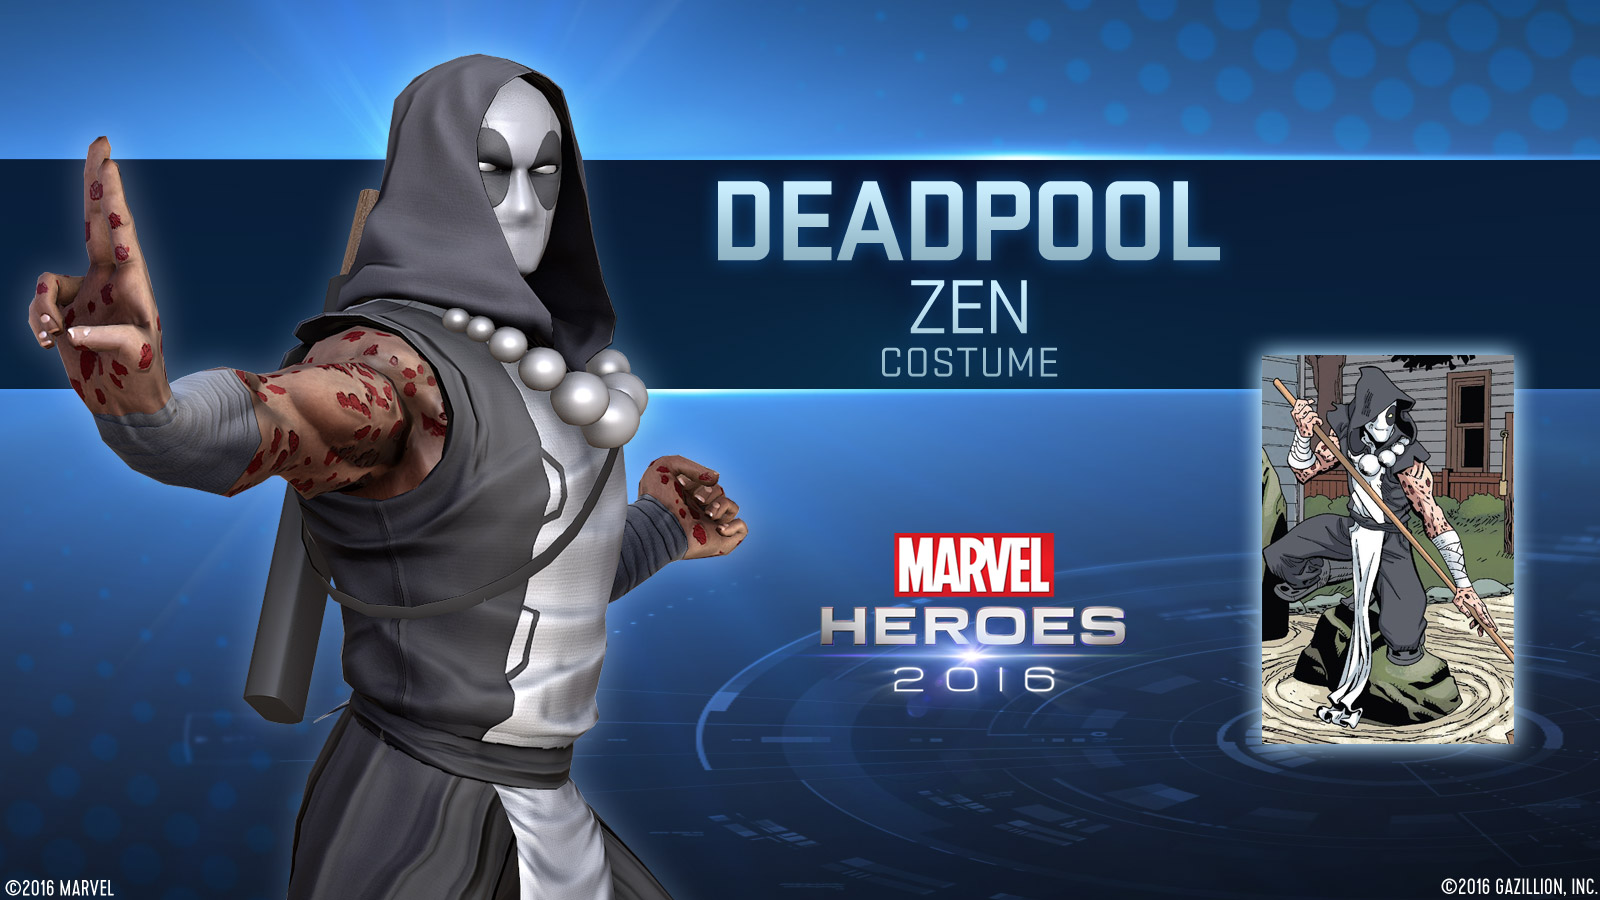 Closeup Deadpool Zen Marvel Heroes 2016 Kicks Off Today